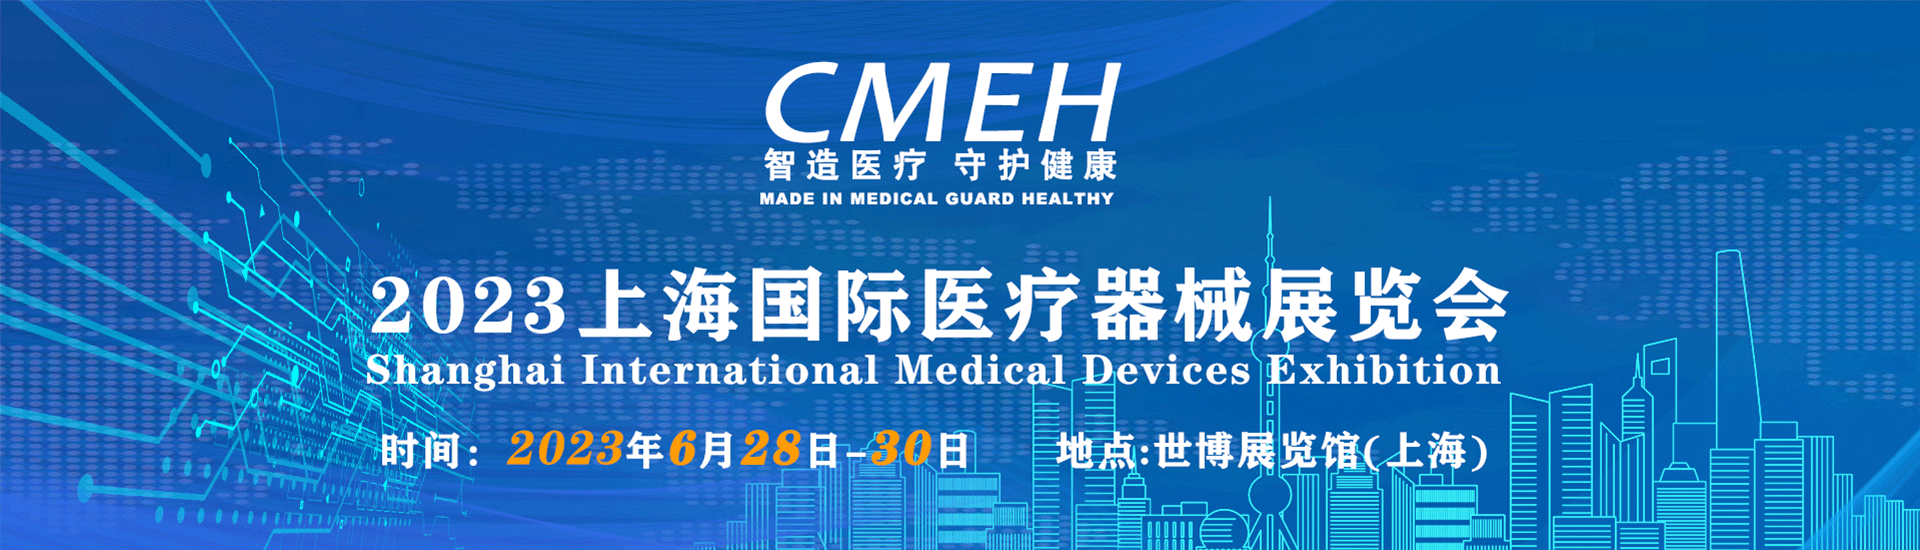 医疗器械展会-中国医疗器械展览会-全国医疗器械展会时间